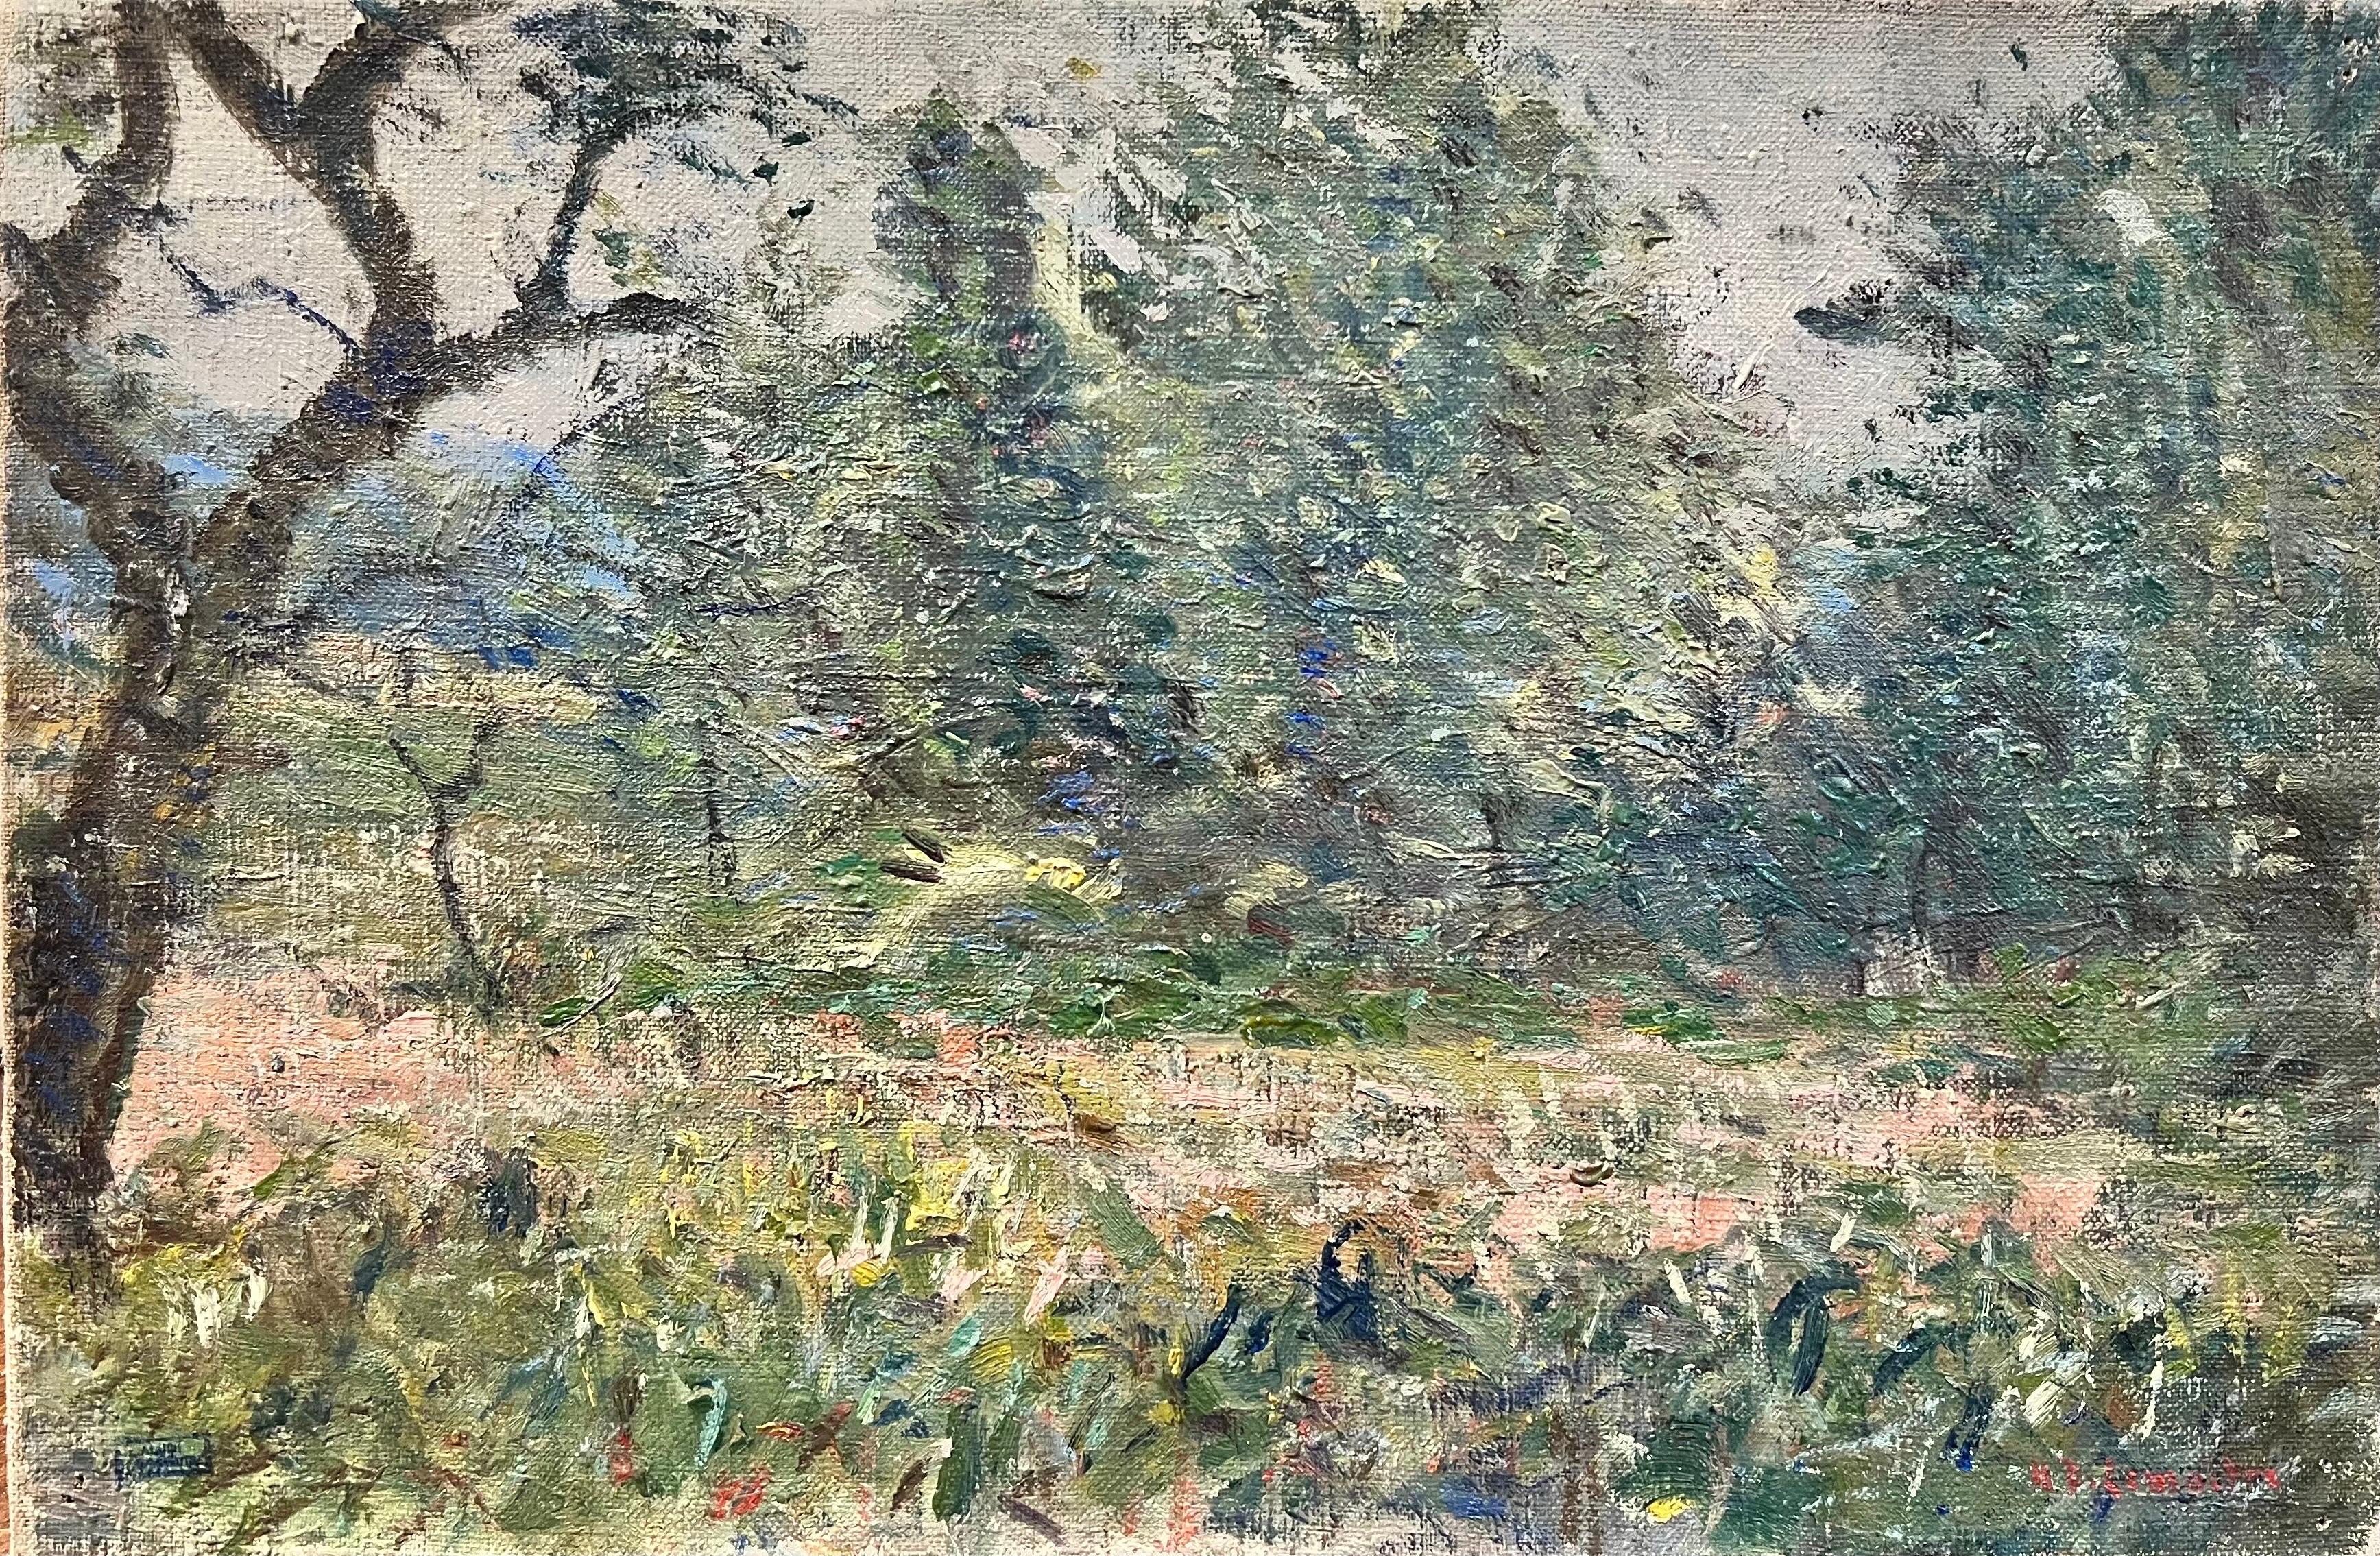 Landscape Painting Henri Dreyfus-Lemaître (1878 – 1947) - Superbe paysage à l'huile impressionniste français Wild Meadows & Trees des années 1900, signé